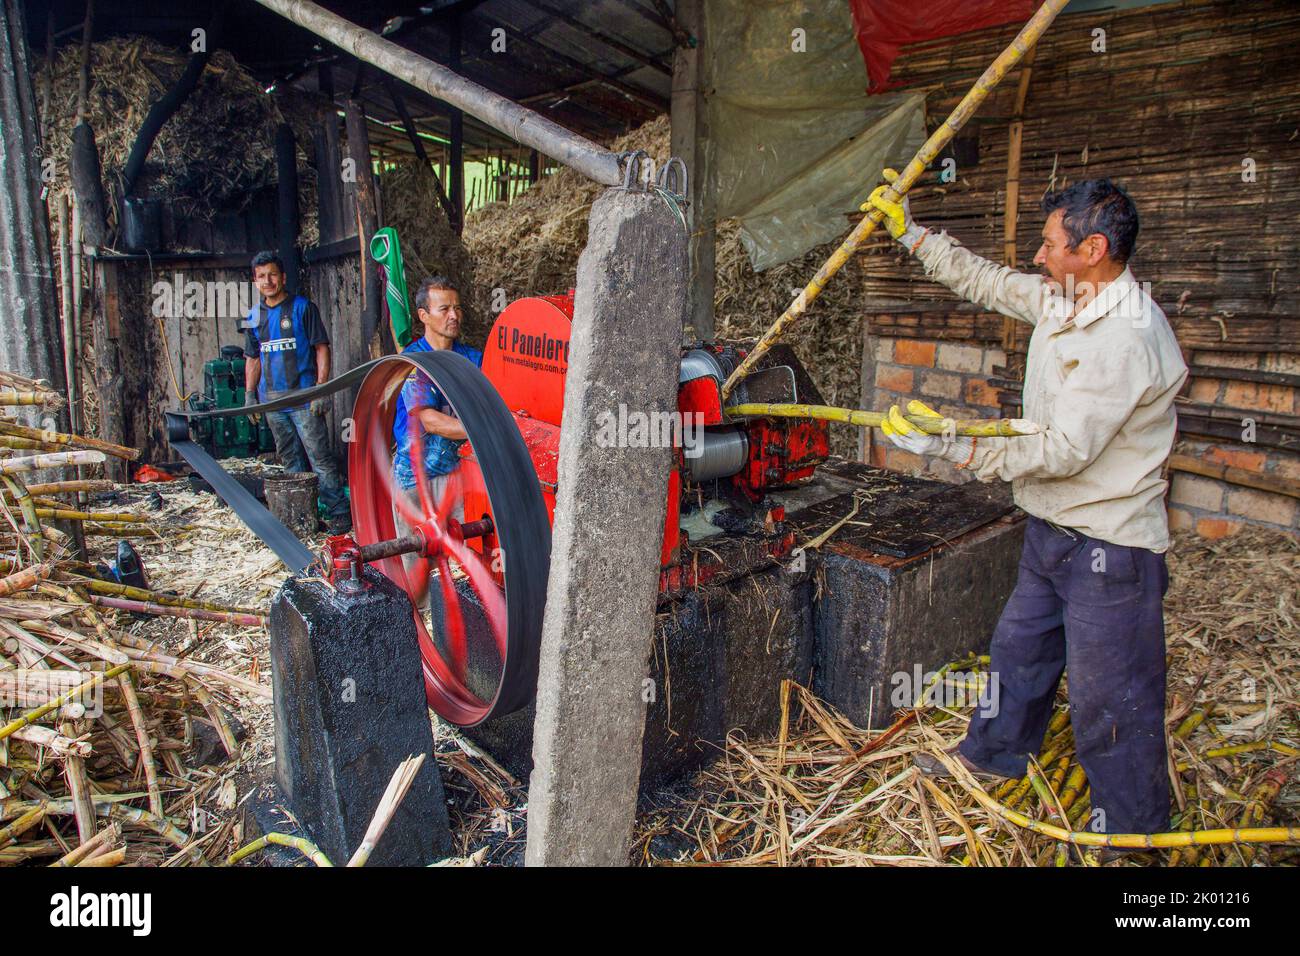 Colombia, dipartimento di Huila, regione di San Agustin, canna da zucchero è raccolto principalmente da piccoli agricoltori, trasportando la canna in un capannone con una pres meccanica Foto Stock